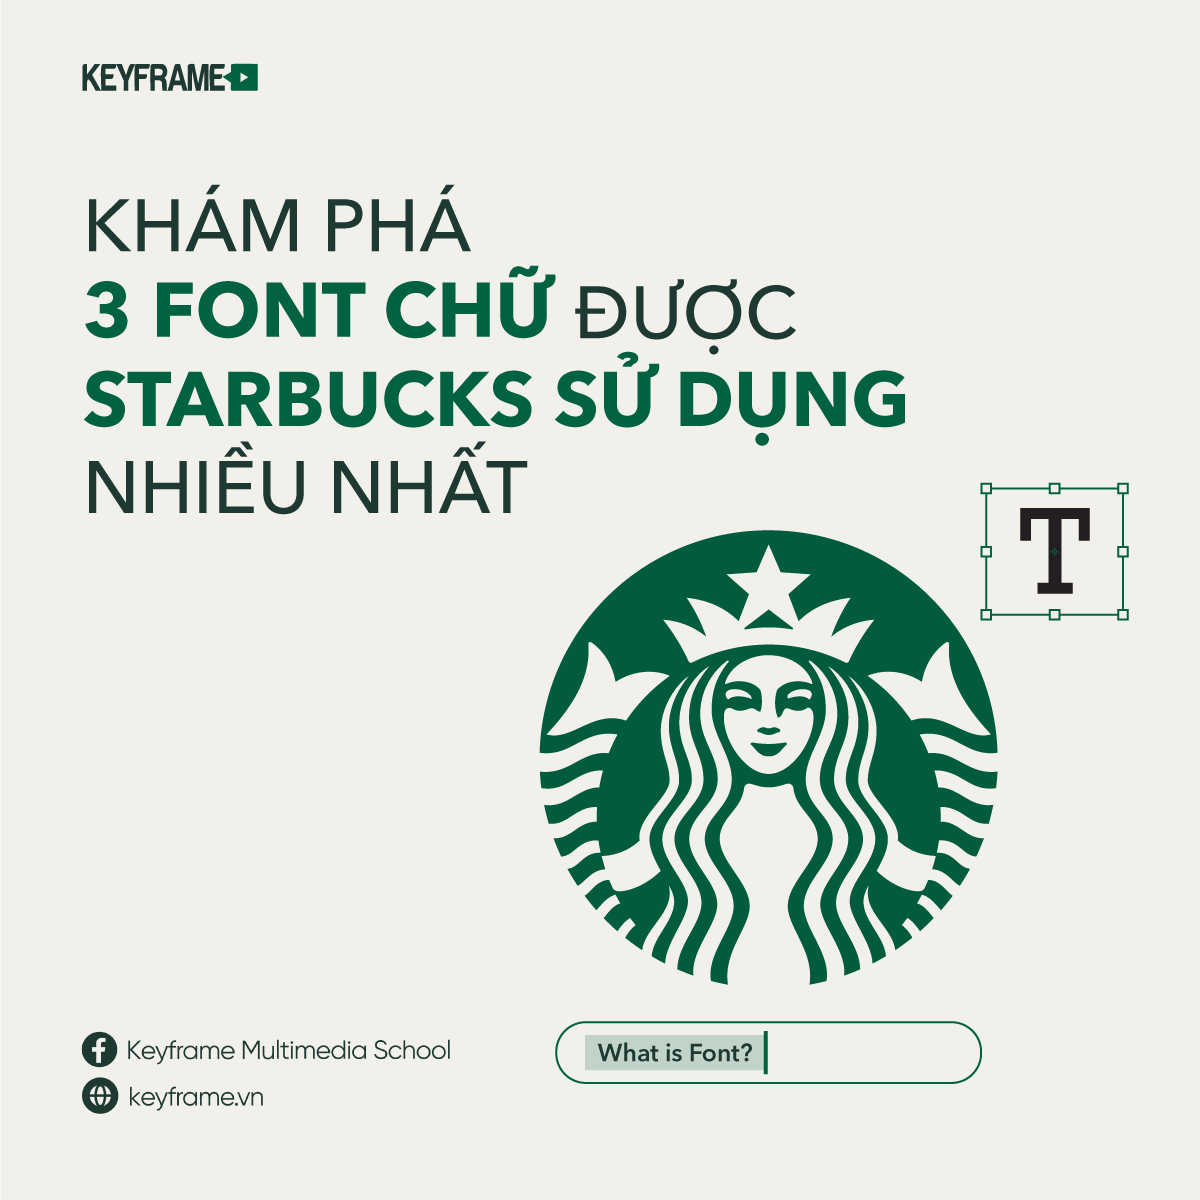 Khám phá 3 font chữ được Starbucks sử dụng nhiều nhất